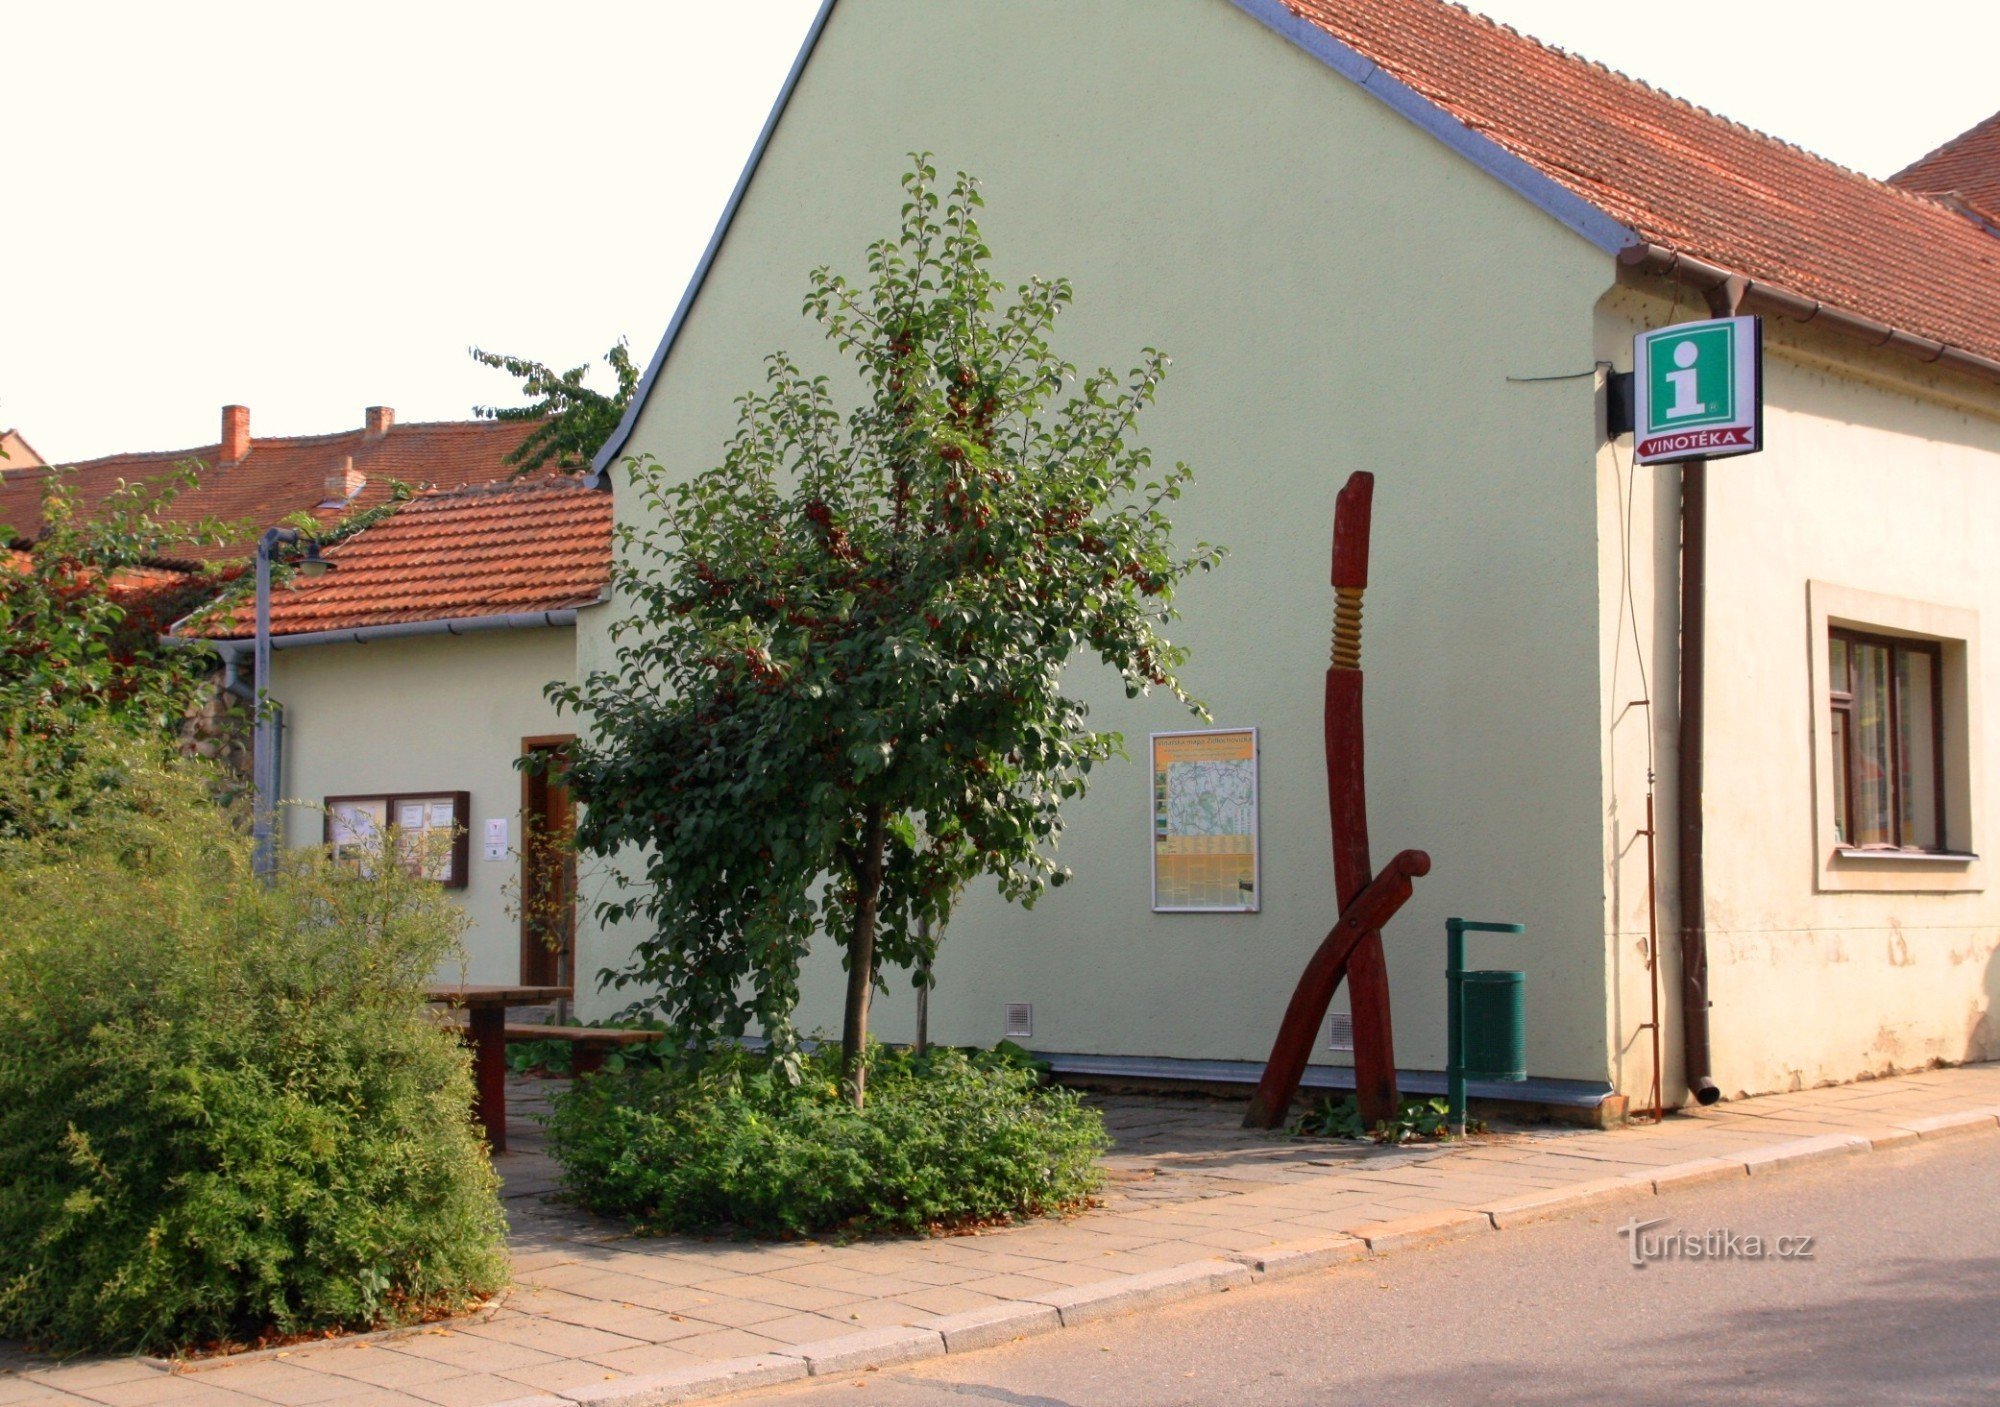 Židlochovice - centro regional de turismo e informações e loja de vinhos